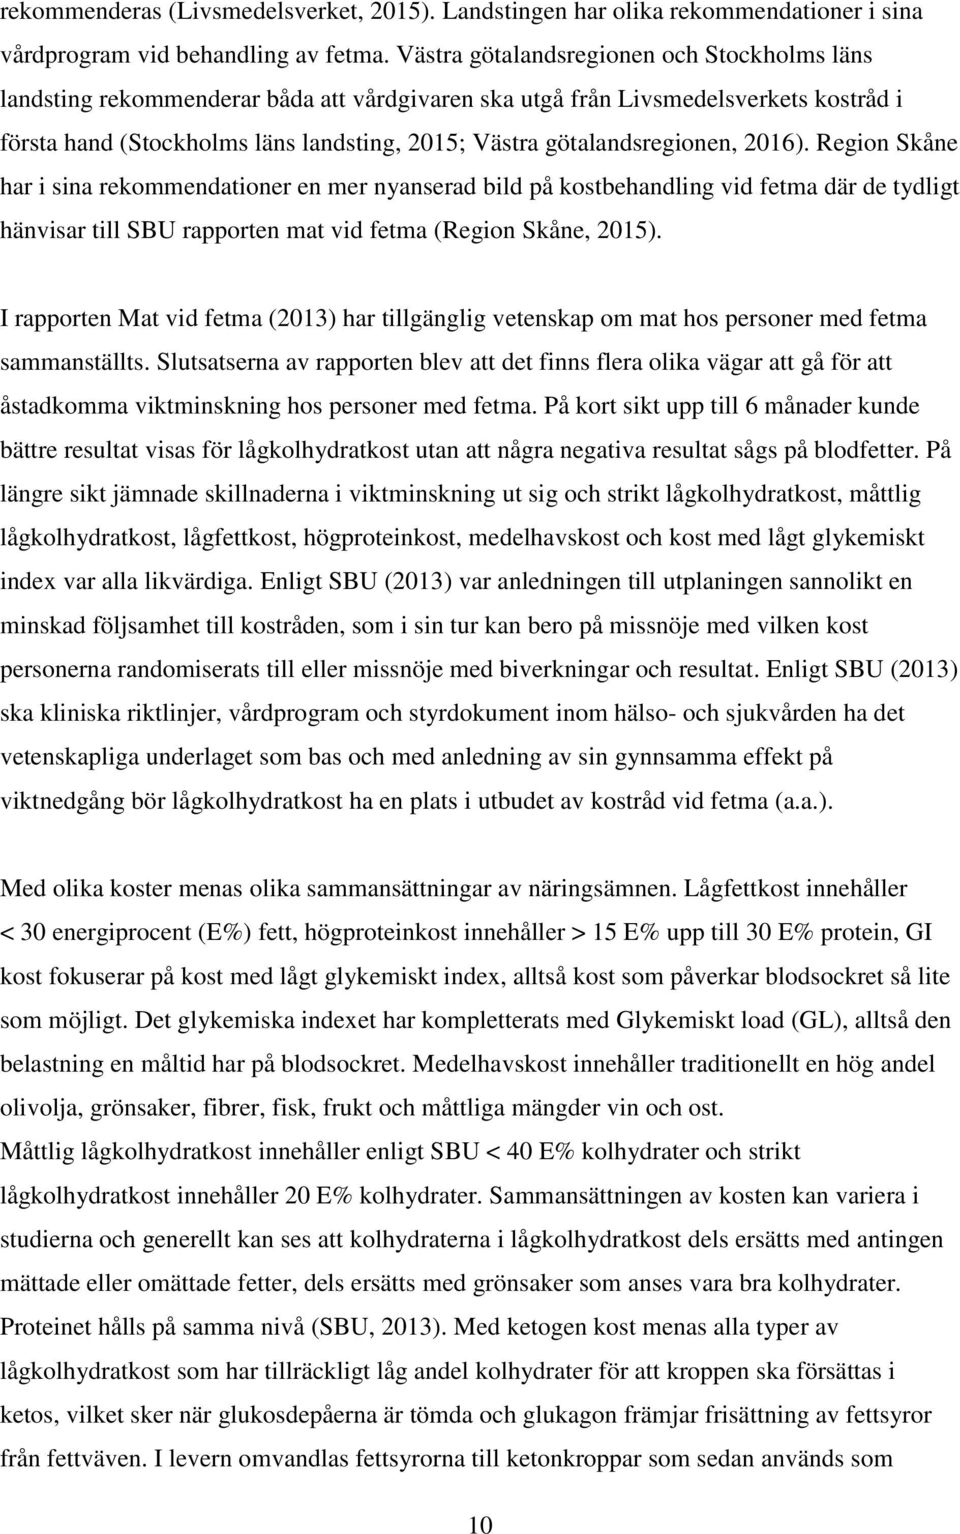 götalandsregionen, 2016). Region Skåne har i sina rekommendationer en mer nyanserad bild på kostbehandling vid fetma där de tydligt hänvisar till SBU rapporten mat vid fetma (Region Skåne, 2015).